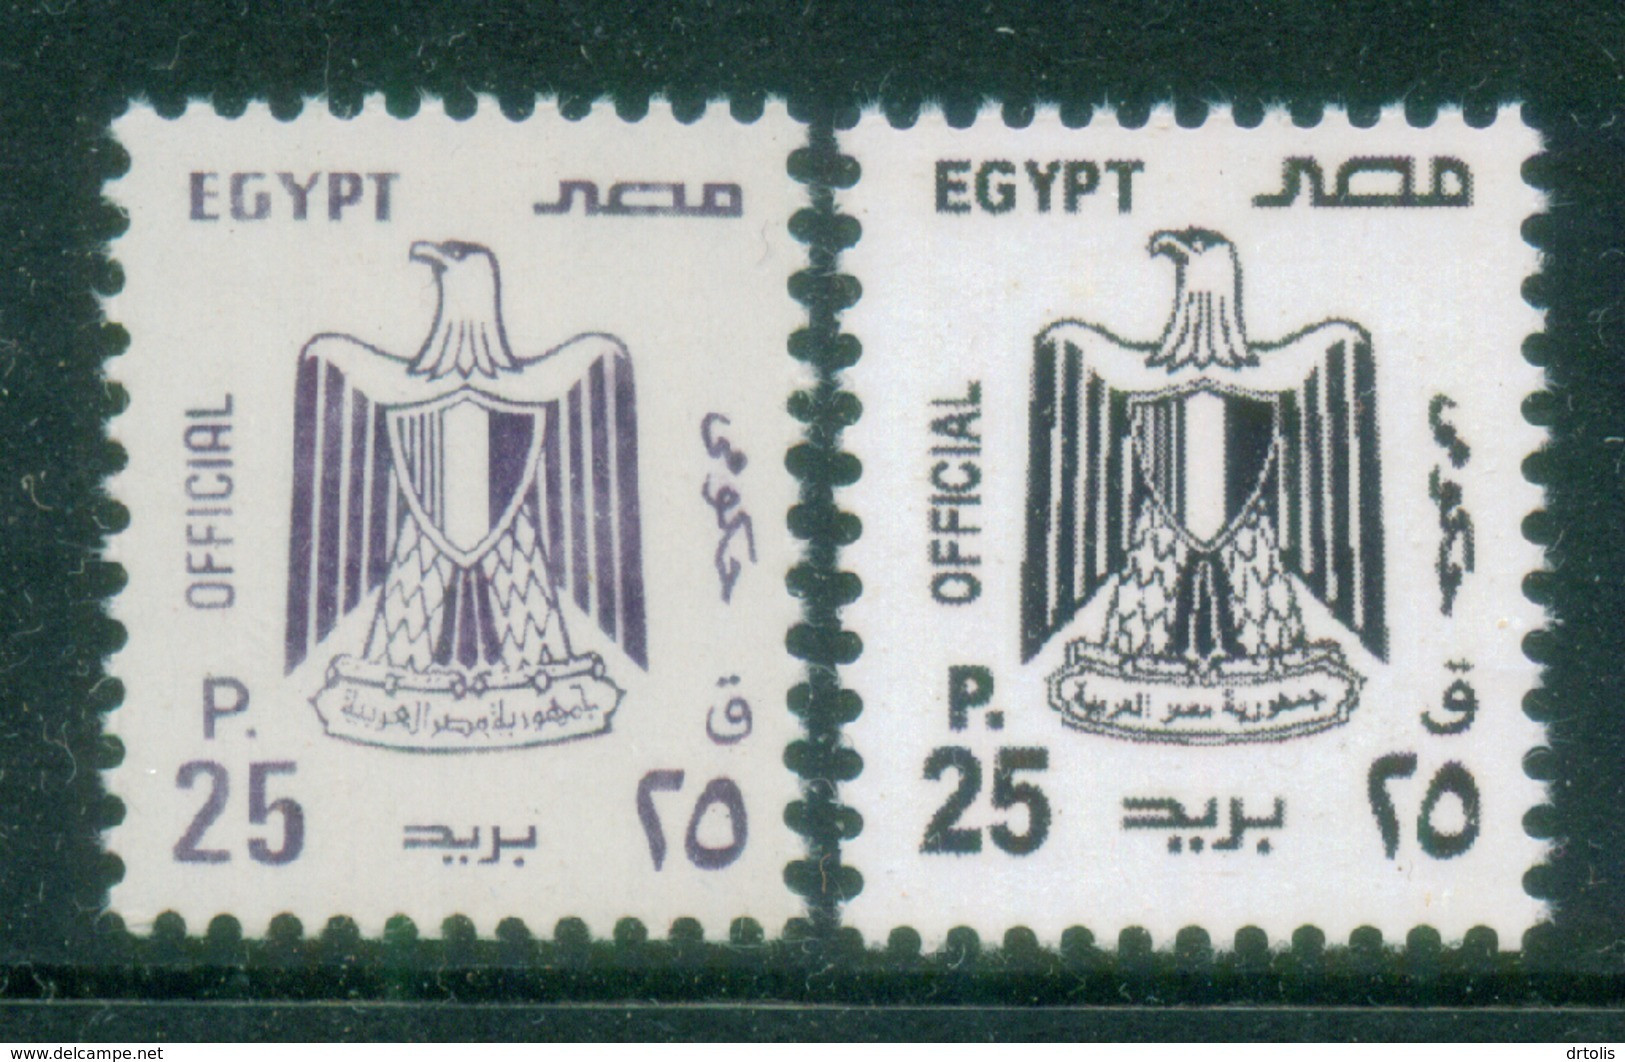 EGYPT / 2001 / OFFICIAL / 25 PT / NO WMK / VERY RARE : TYPE I & II / MNH / VF - Neufs